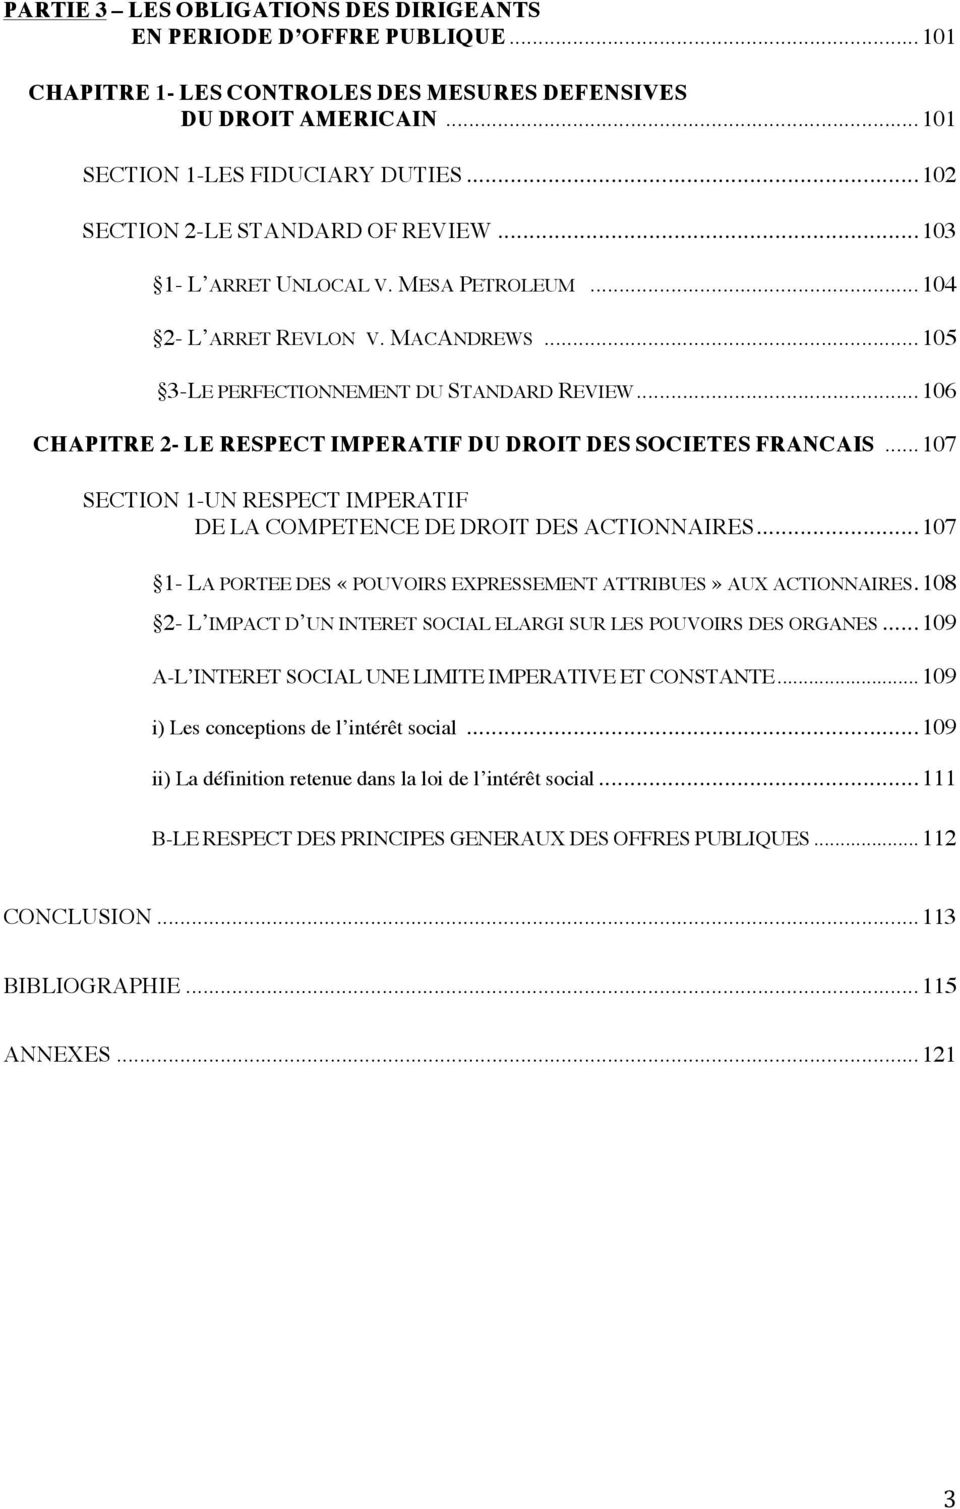 .. 106 CHAPITRE 2- LE RESPECT IMPERATIF DU DROIT DES SOCIETES FRANCAIS... 107 SECTION 1-UN RESPECT IMPERATIF DE LA COMPETENCE DE DROIT DES ACTIONNAIRES.